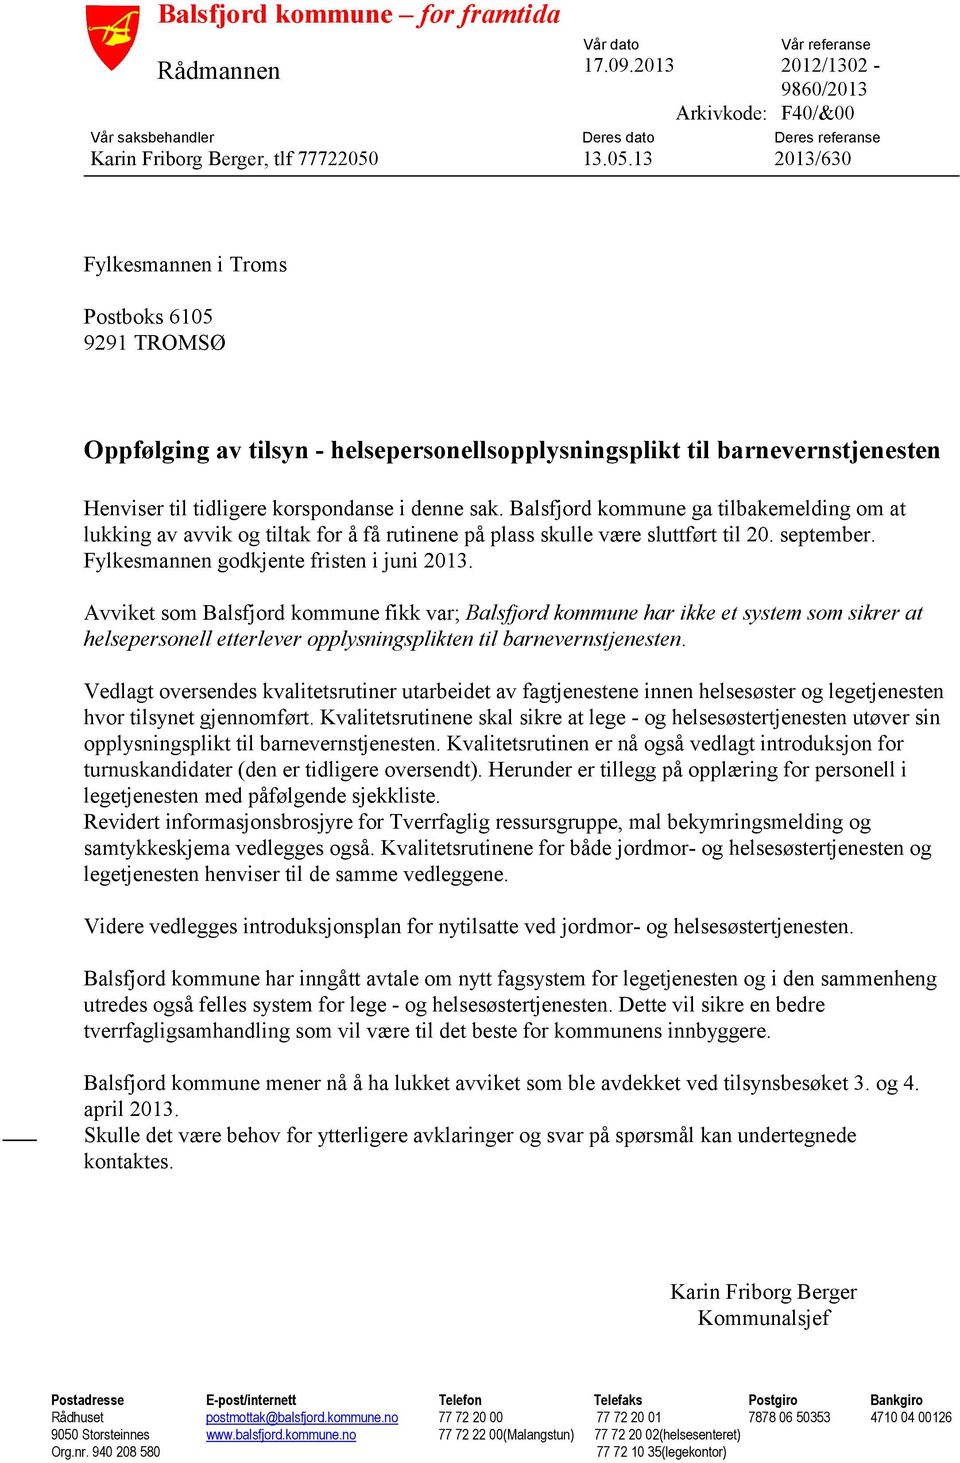 Balsfjord kommune ga tilbakemelding om at lukking av avvik og tiltak for å få rutinene på plass skulle være sluttført til 20. september. Fylkesmannen godkjente fristen i juni 2013.